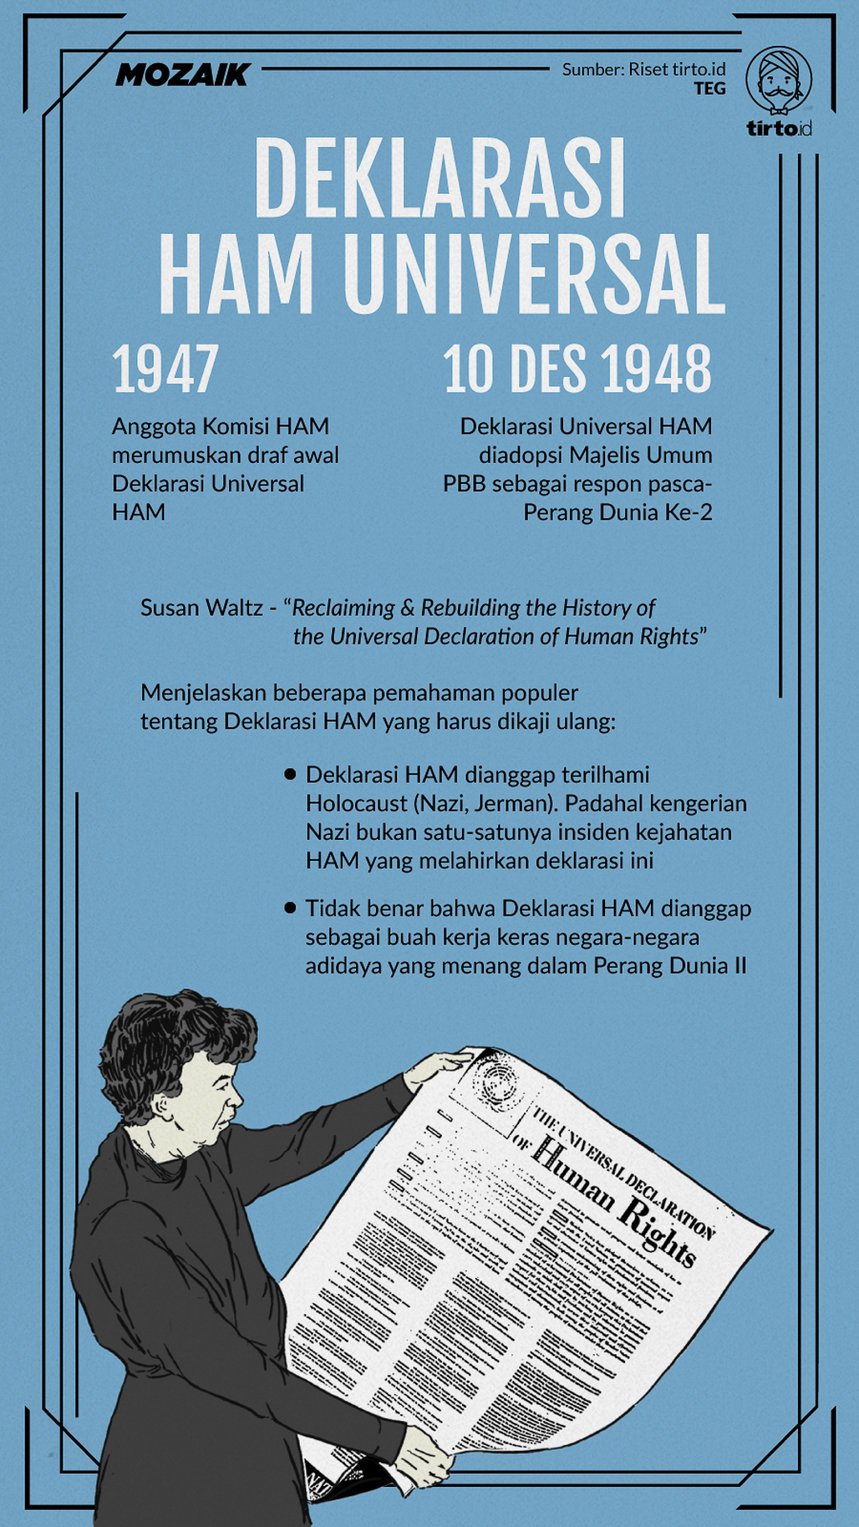 Manakah fakta-fakta sejarah berikut ini yang termasuk perubahan pada masa kolonial barat